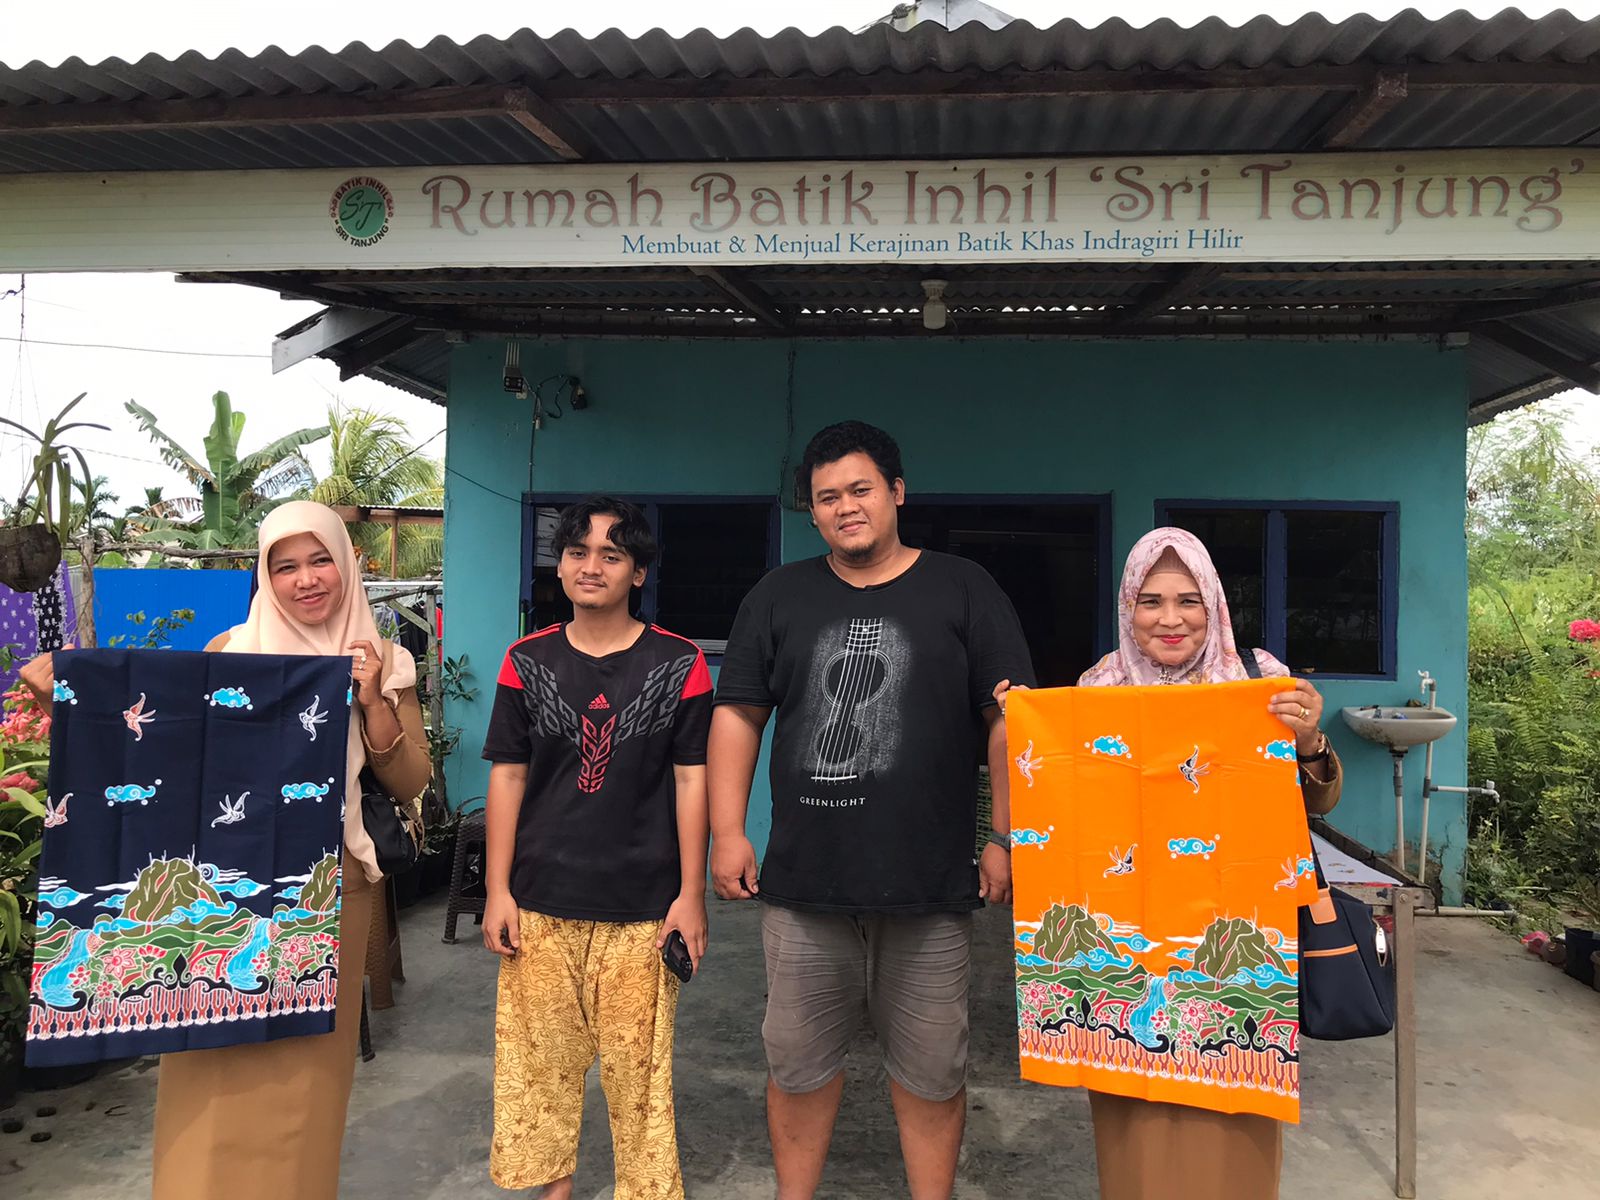 Diskop UKM Inhil lihat berbagai kerajinan batik di Rumah Batik Inhil Sri Tanjung